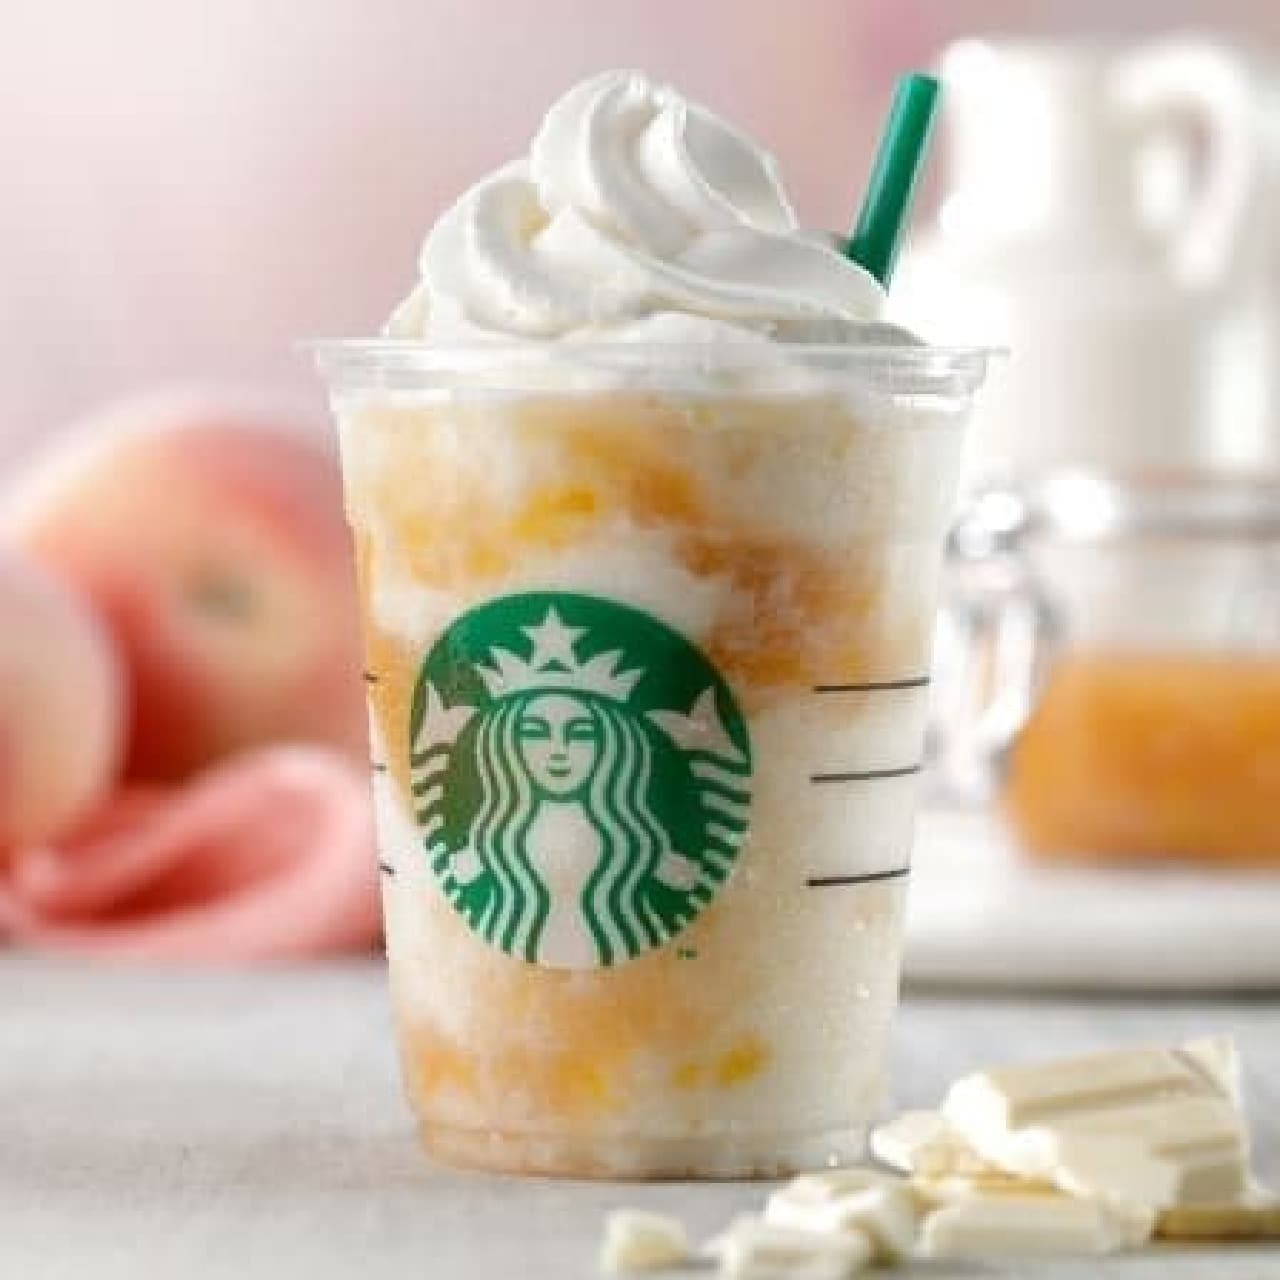 Starbucks Coffee "White Chocolate & Peach Cream Frappuccino"